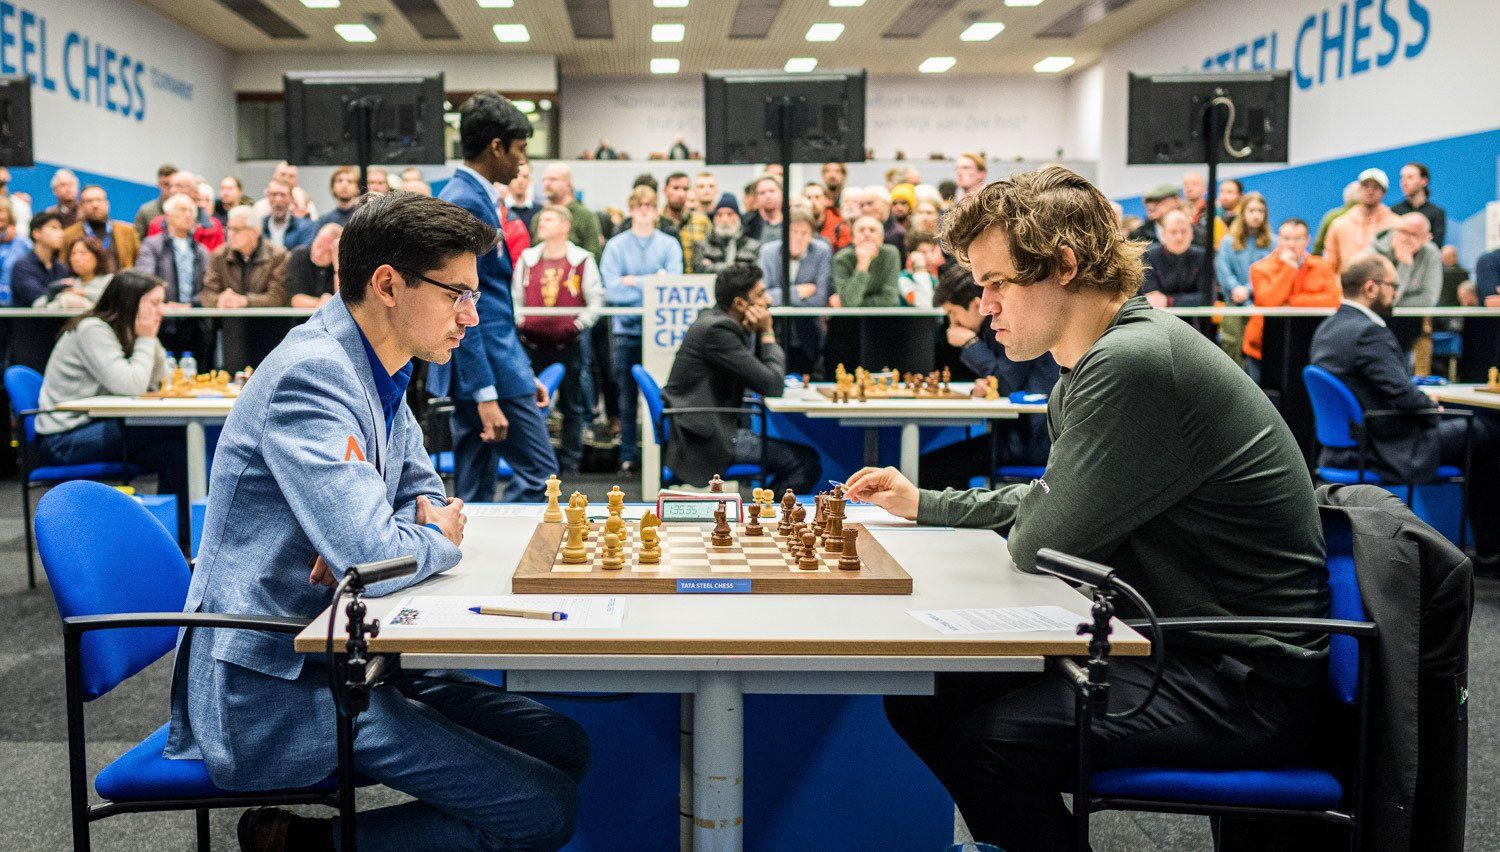 Tata Steel Chess 2023, Round 4